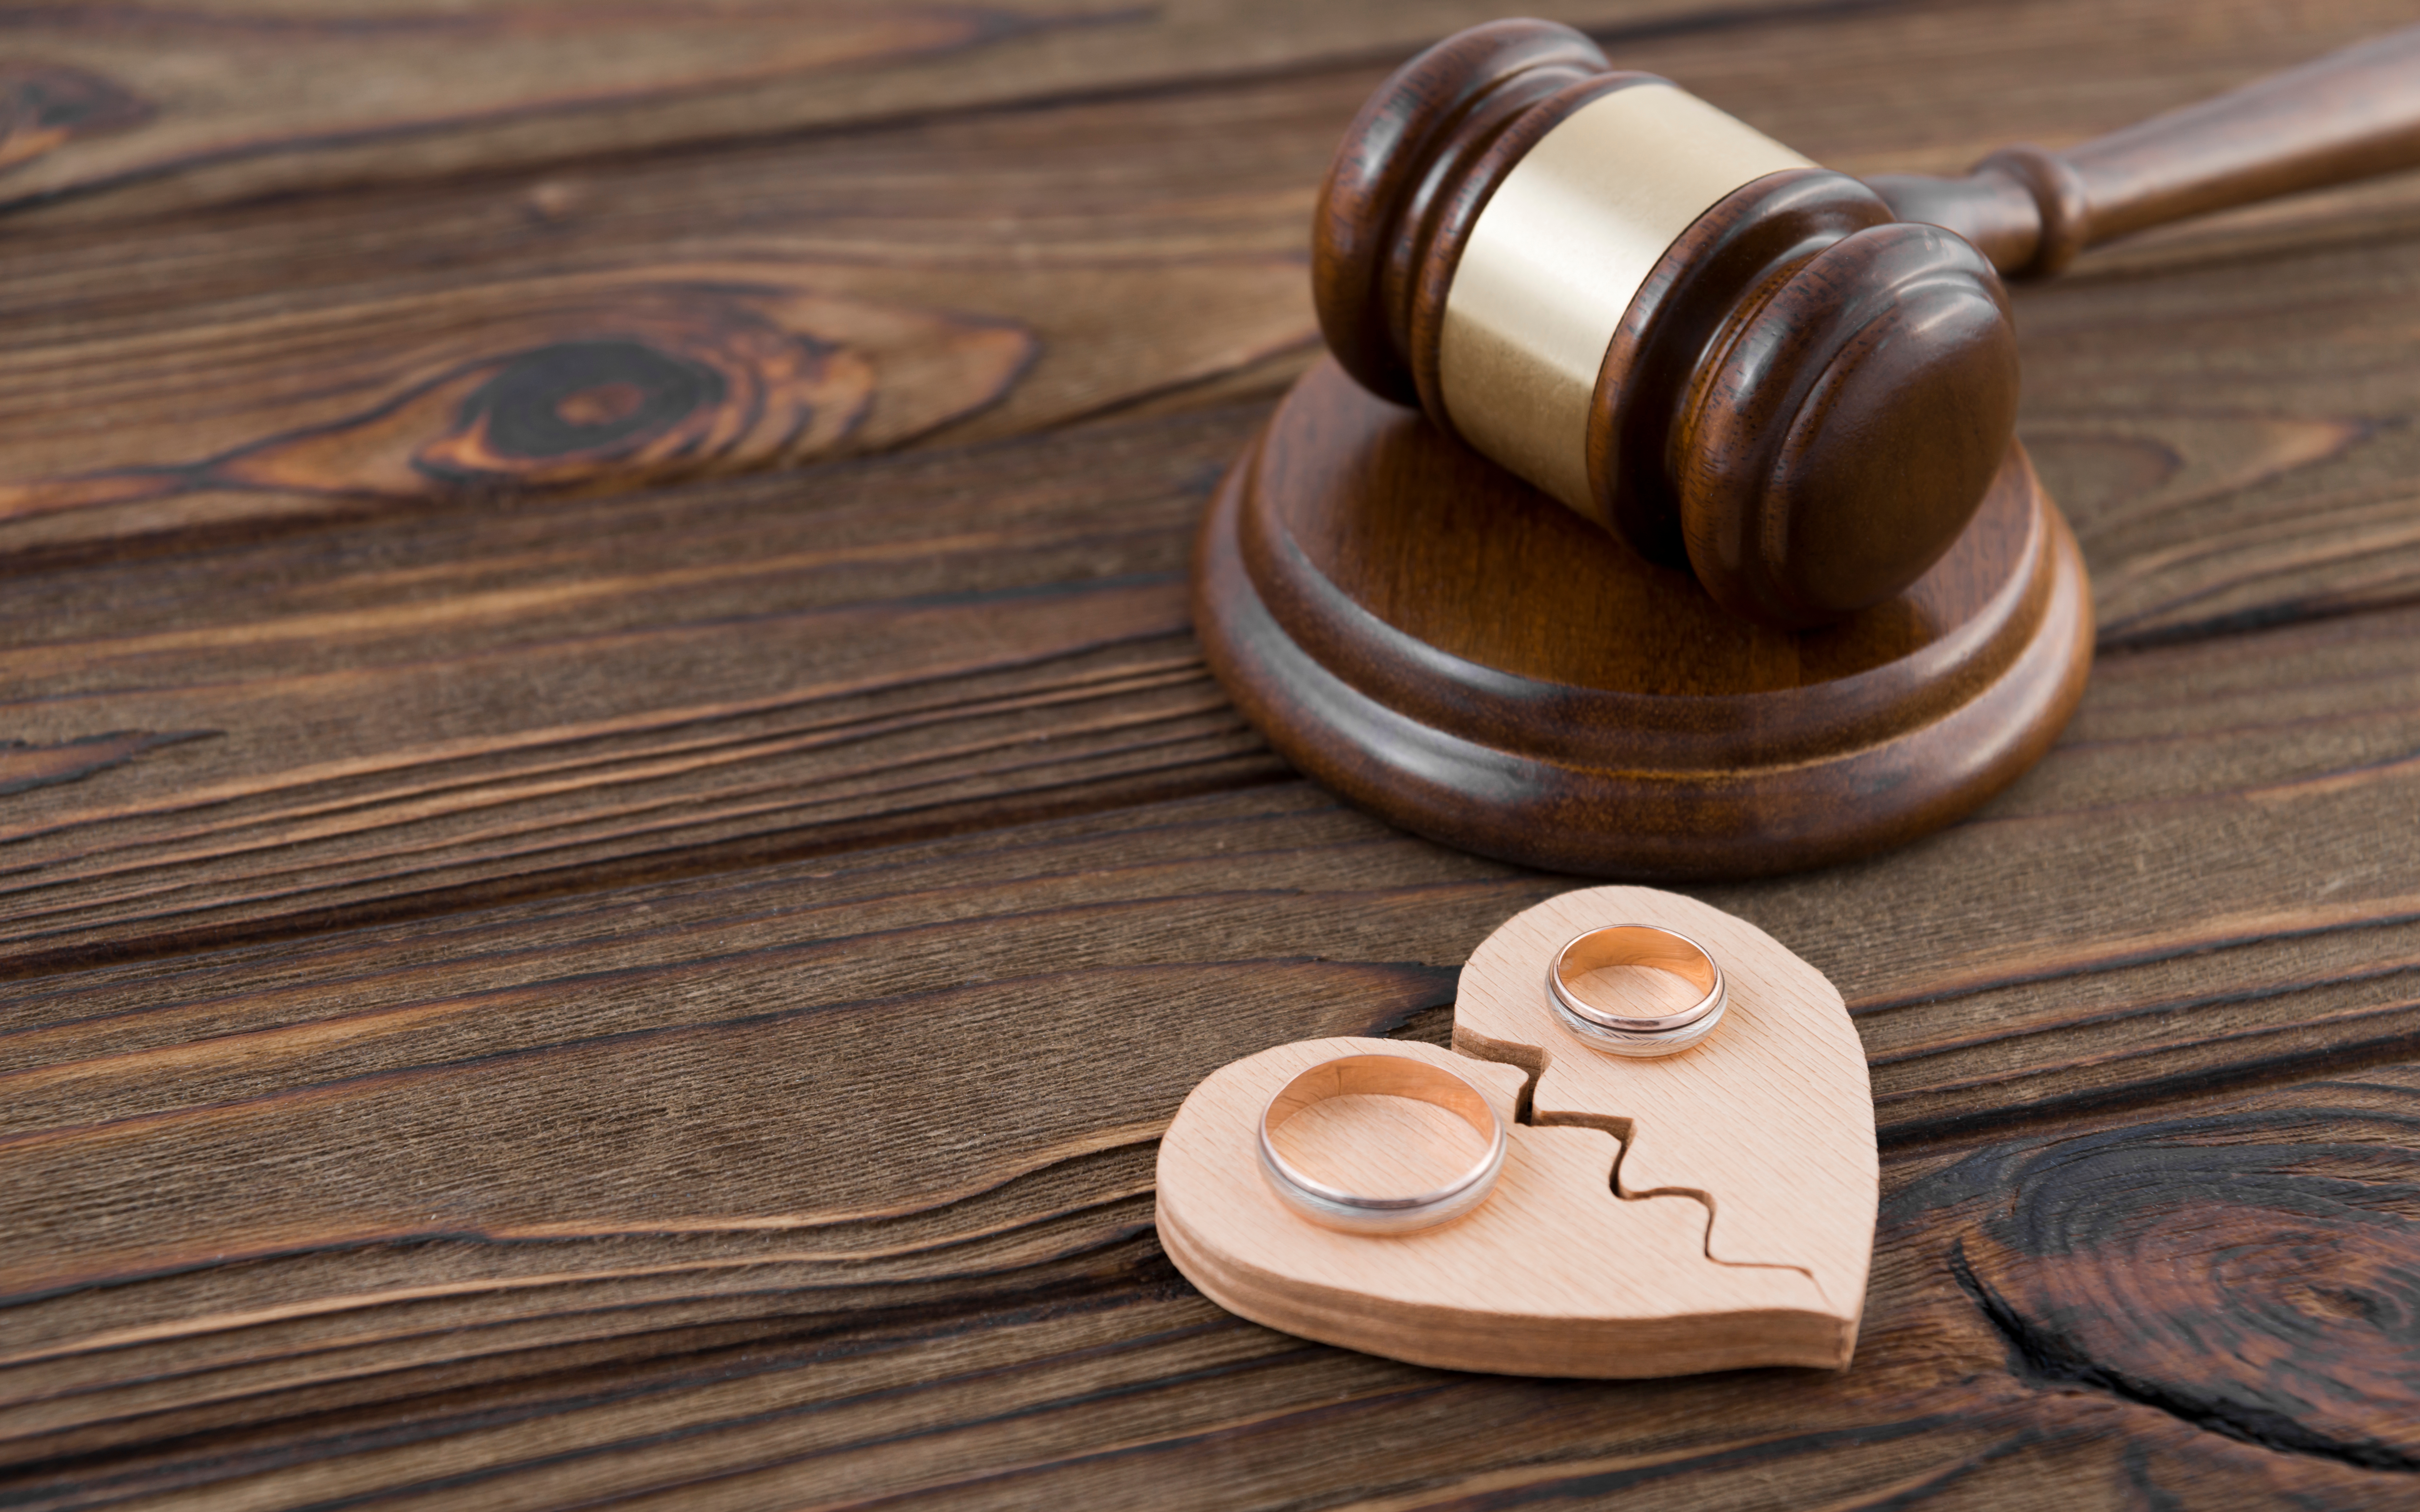 Deux alliances et le marteau d'un juge | Source : Shutterstock